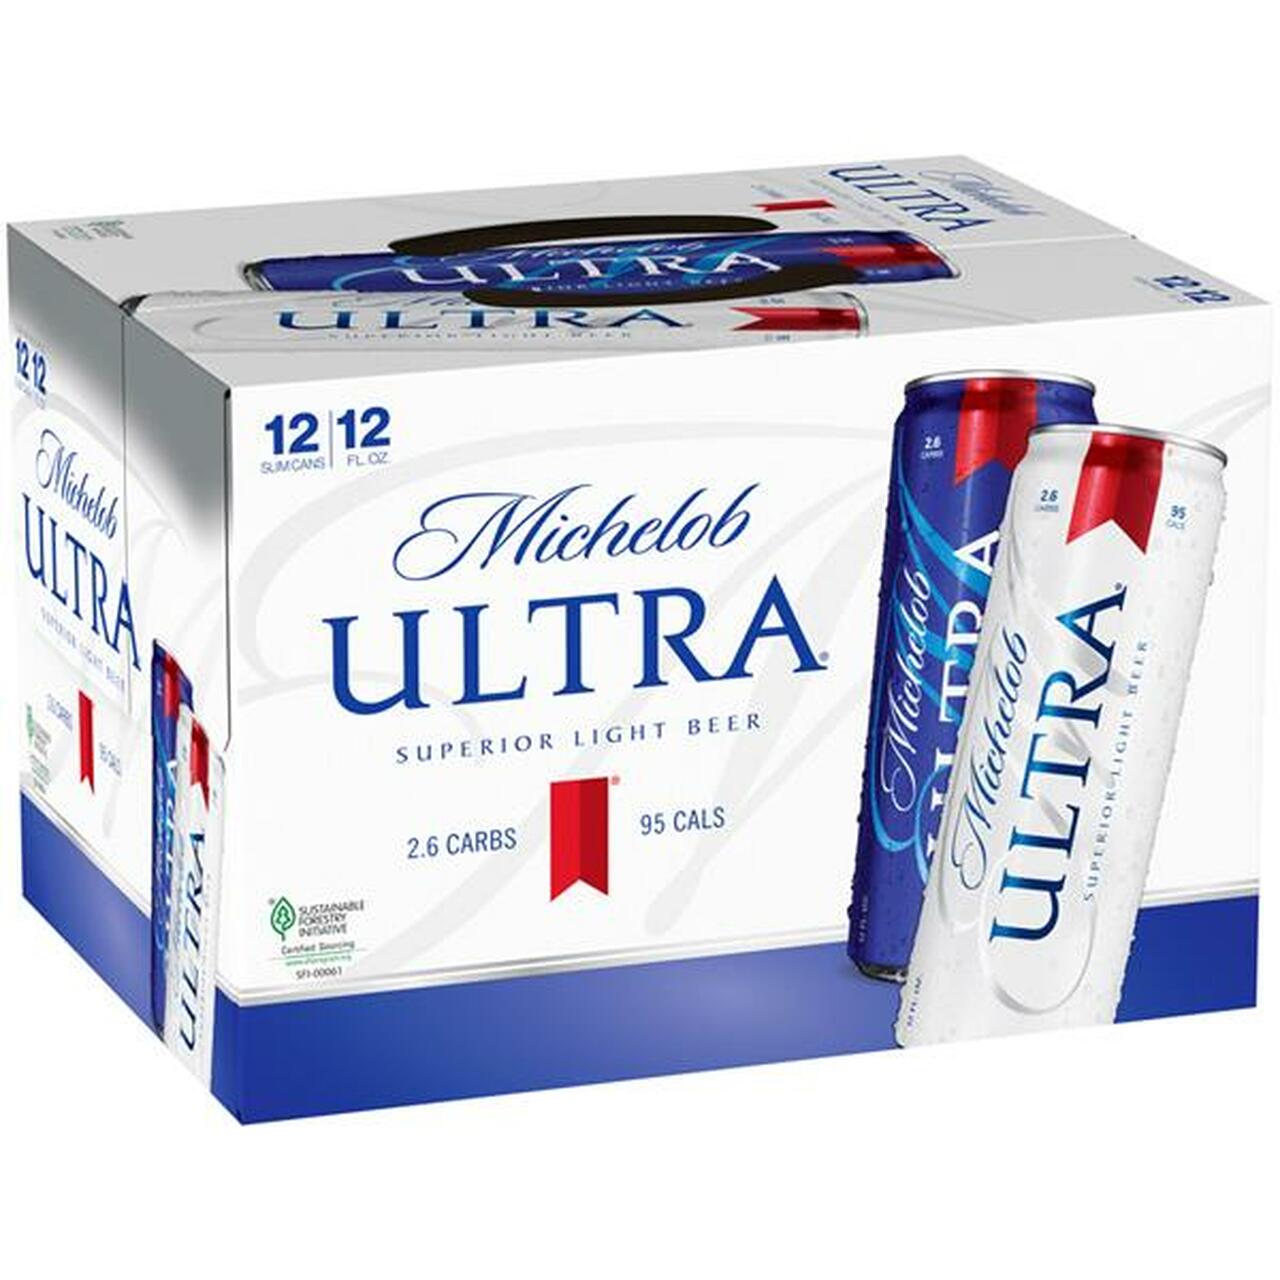 michelob-ultra-12-pack-delivery-in-nashville-tn-laverte-s-liquor-store